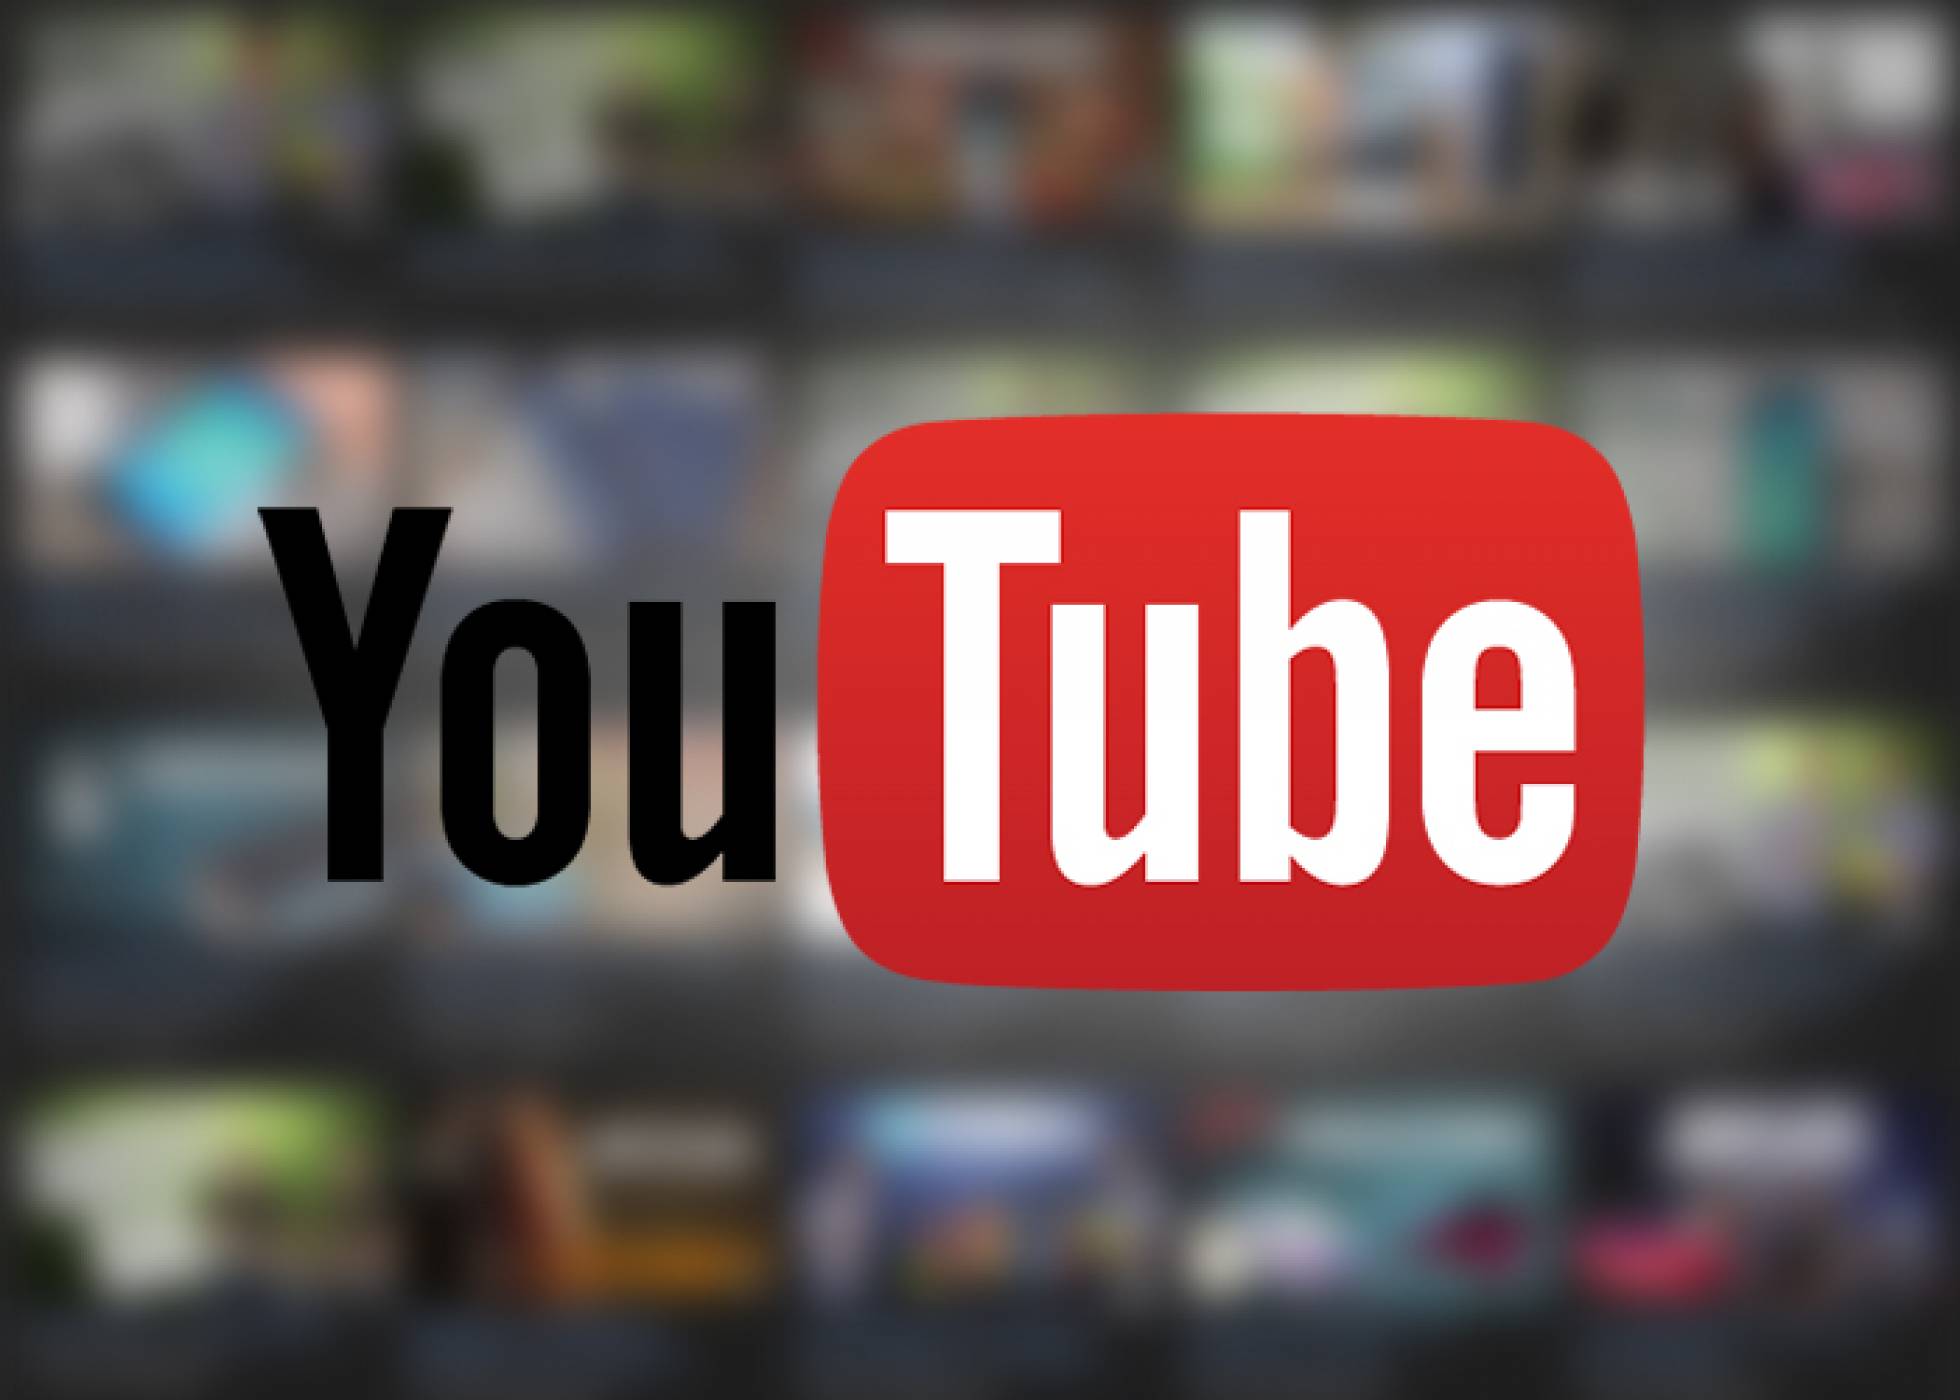 يوتيوب يخطر مستخدميه بشروط خدمة جديدة تدخل حيز التنفيذ الشهر المقبل